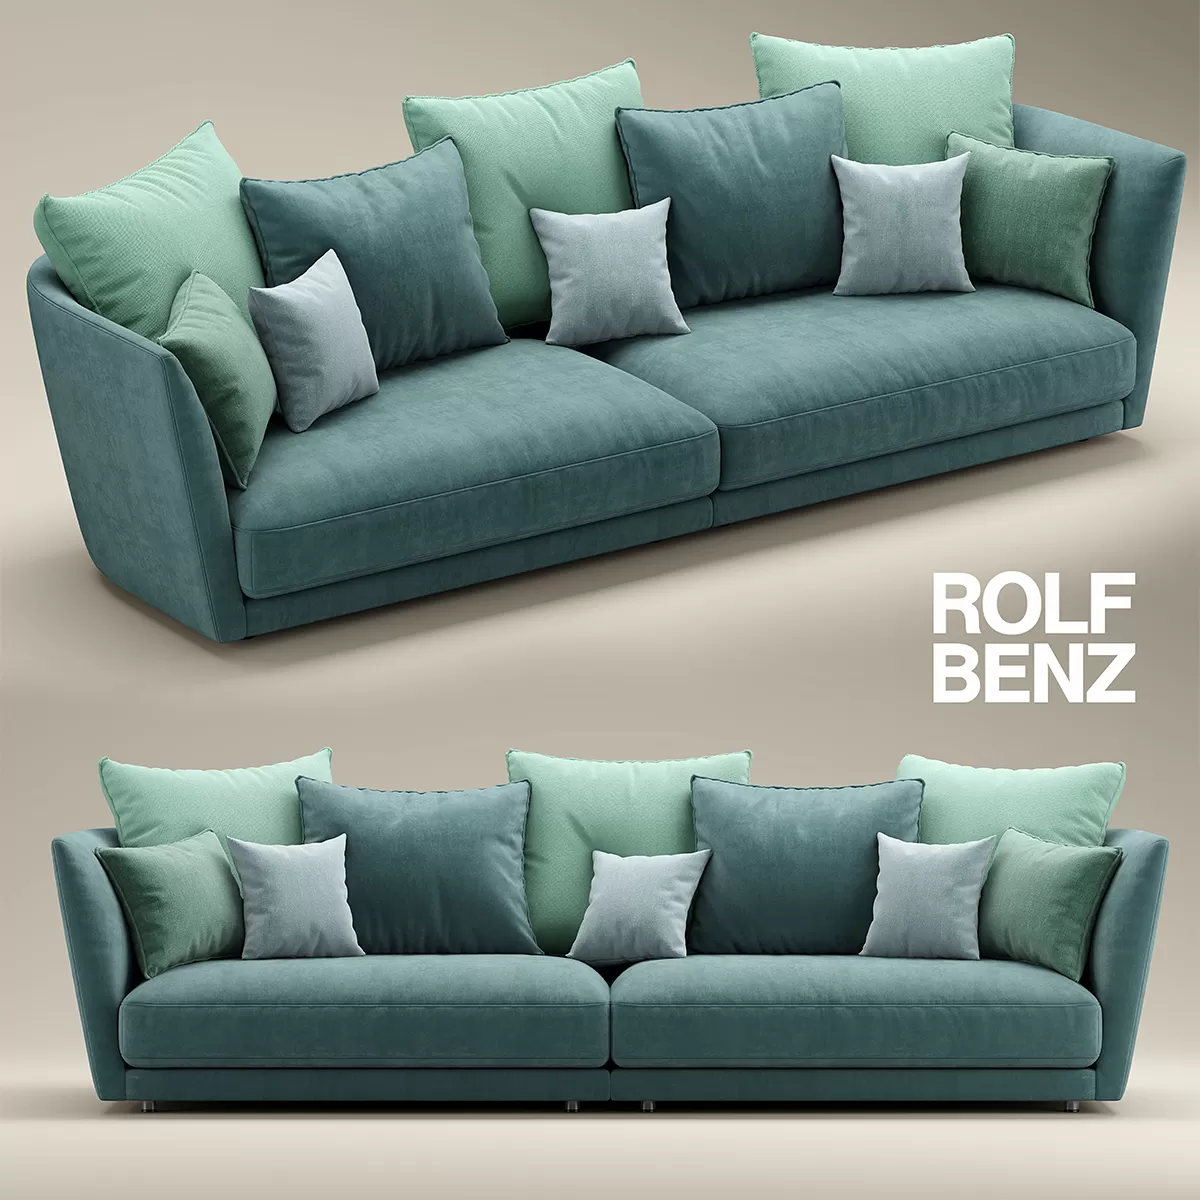 SOFA – Tondo modular sofa by Rolf Benz